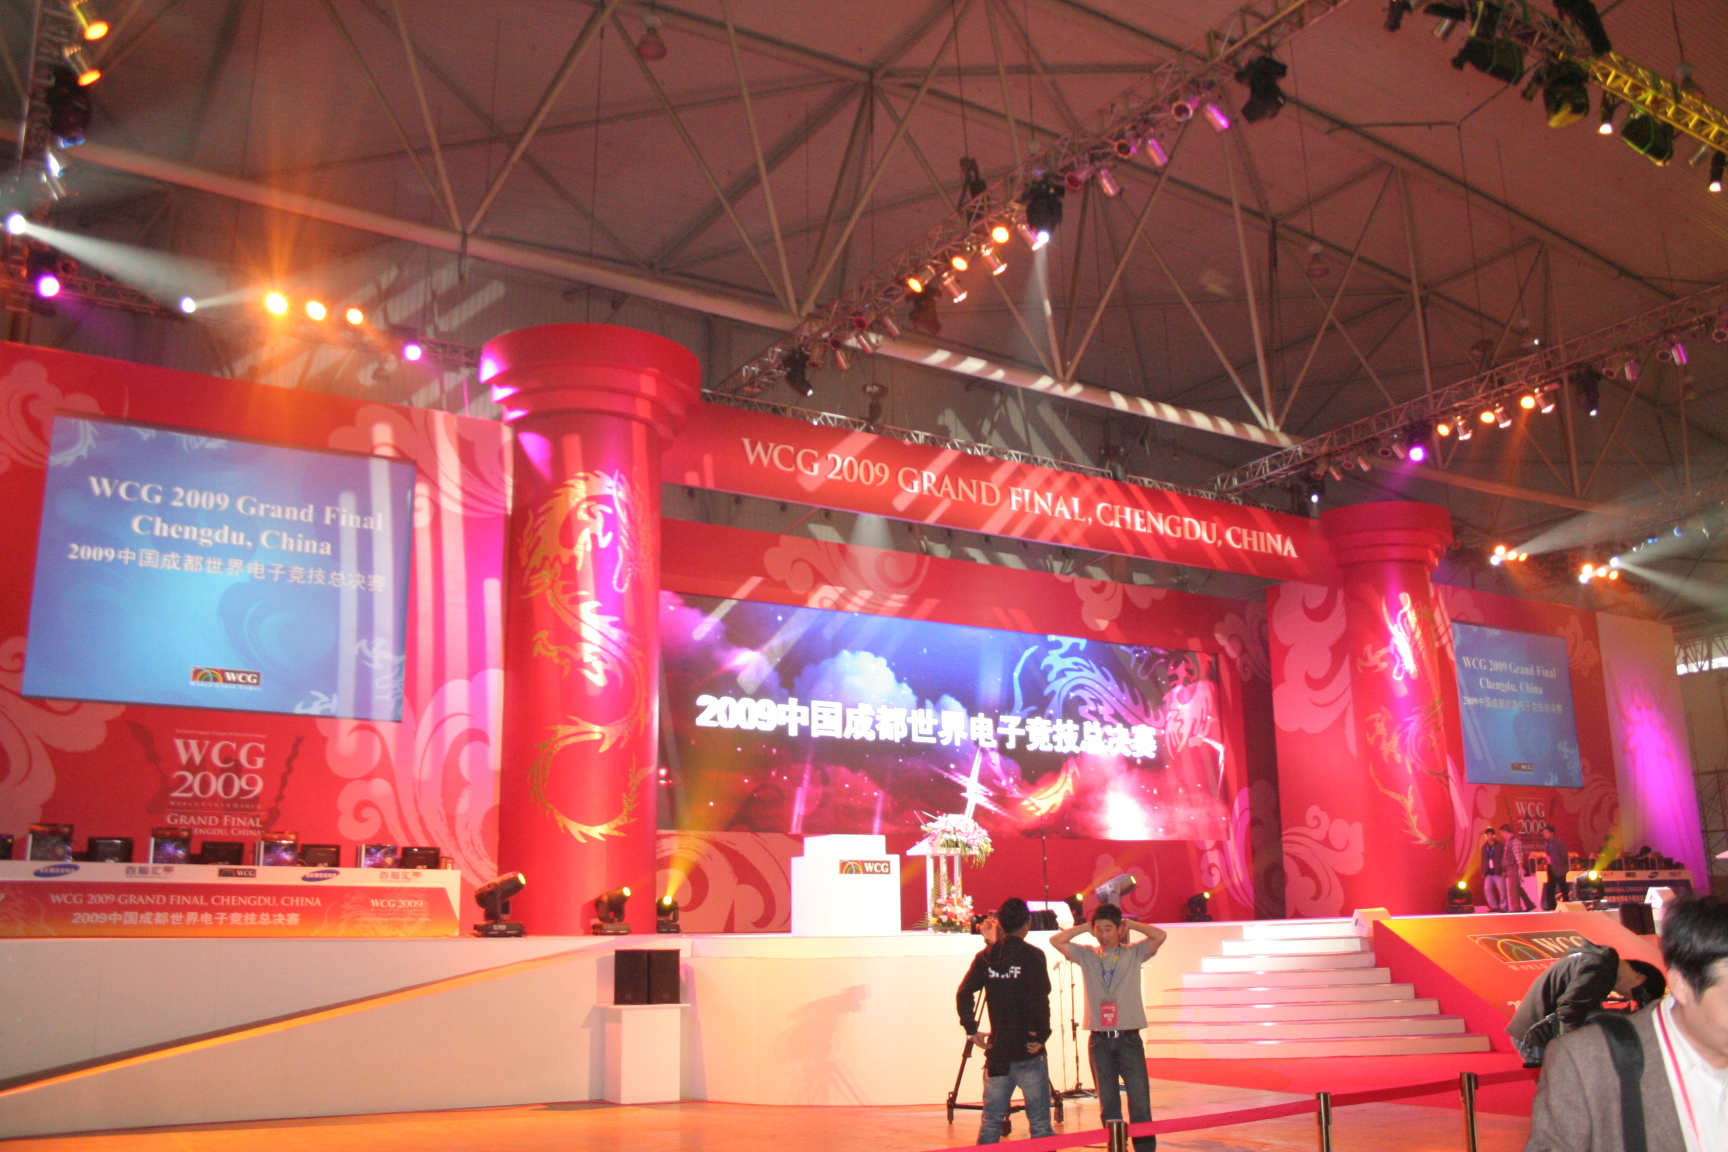 WCG2009世界总决赛开幕式现场图片